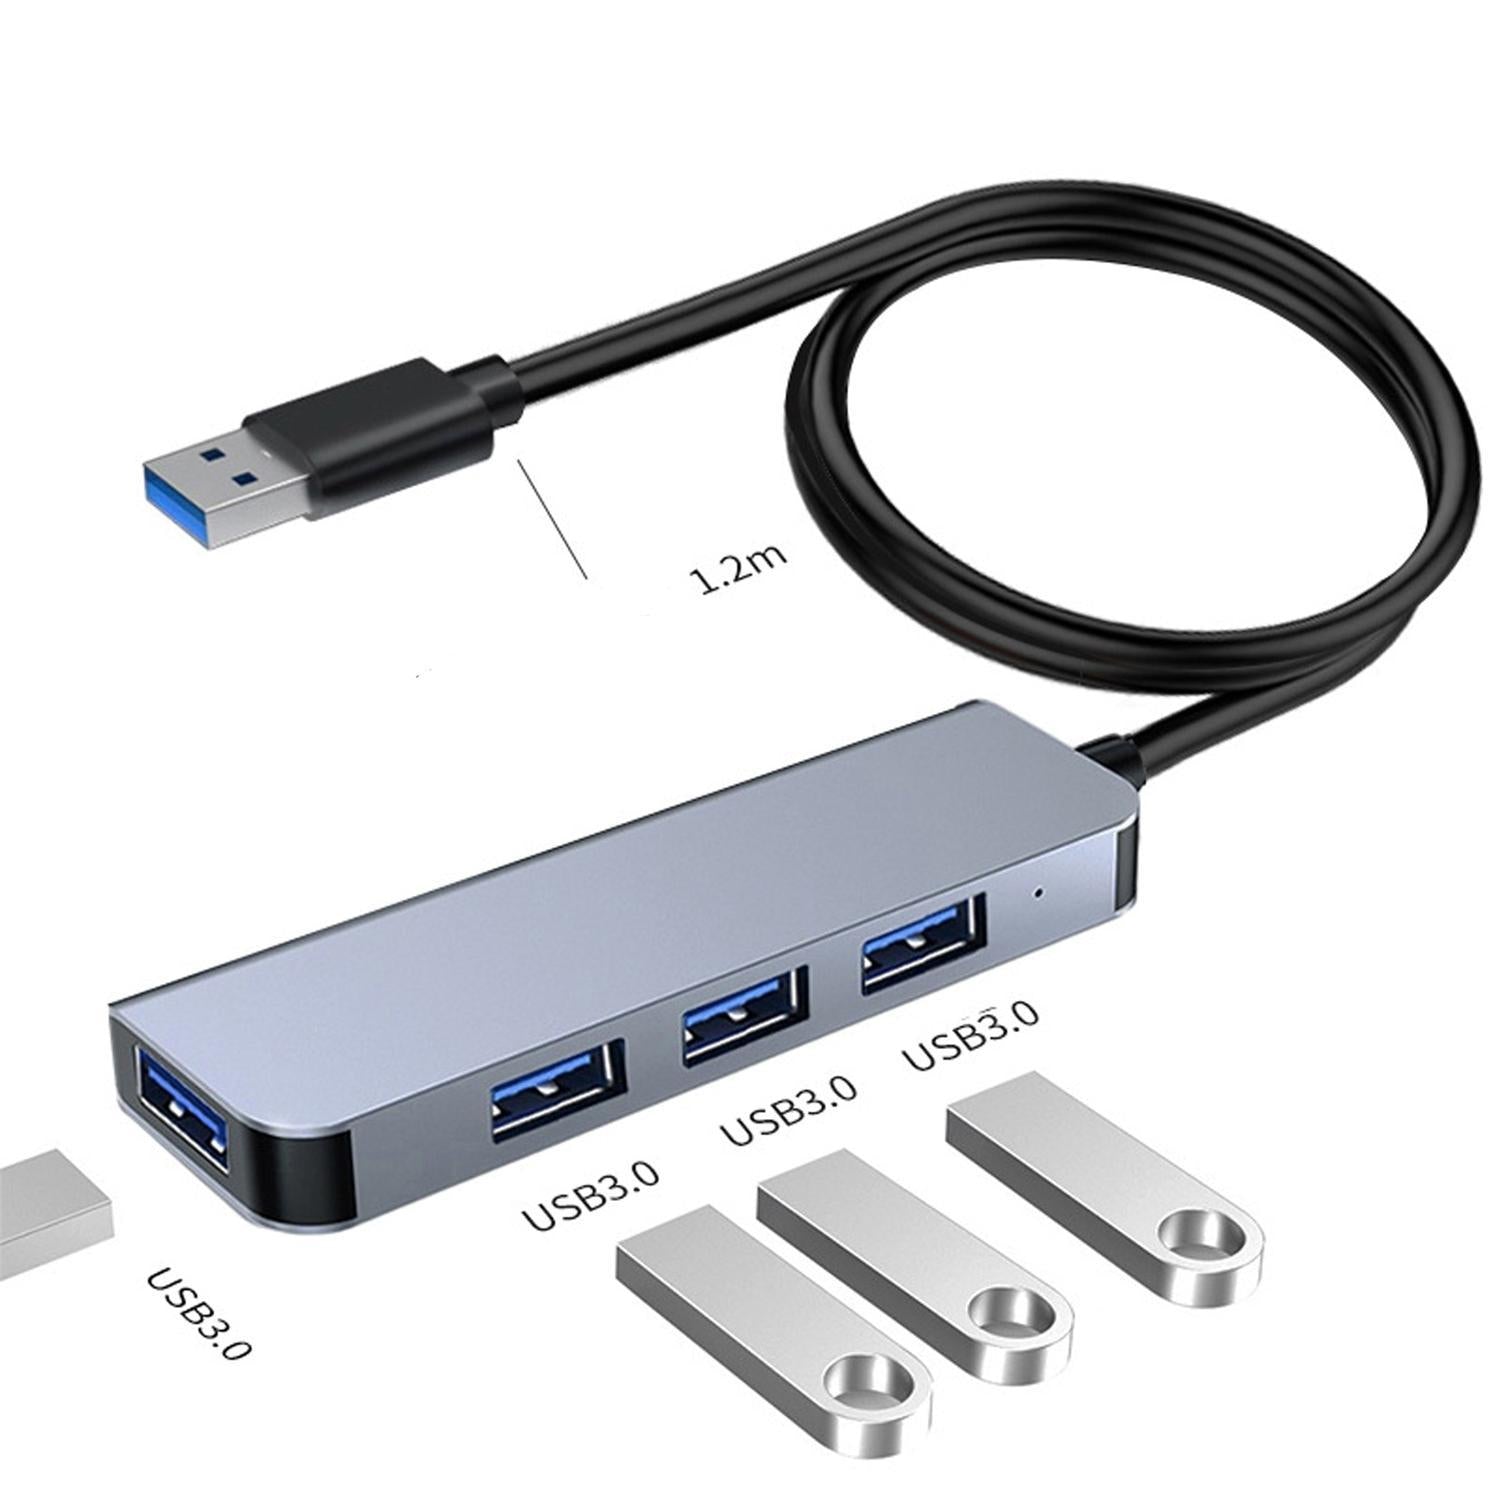 NÖRDIC USB Hub 4 porter 4xUSB-A 3.0 5Gbps 1.2m kabel